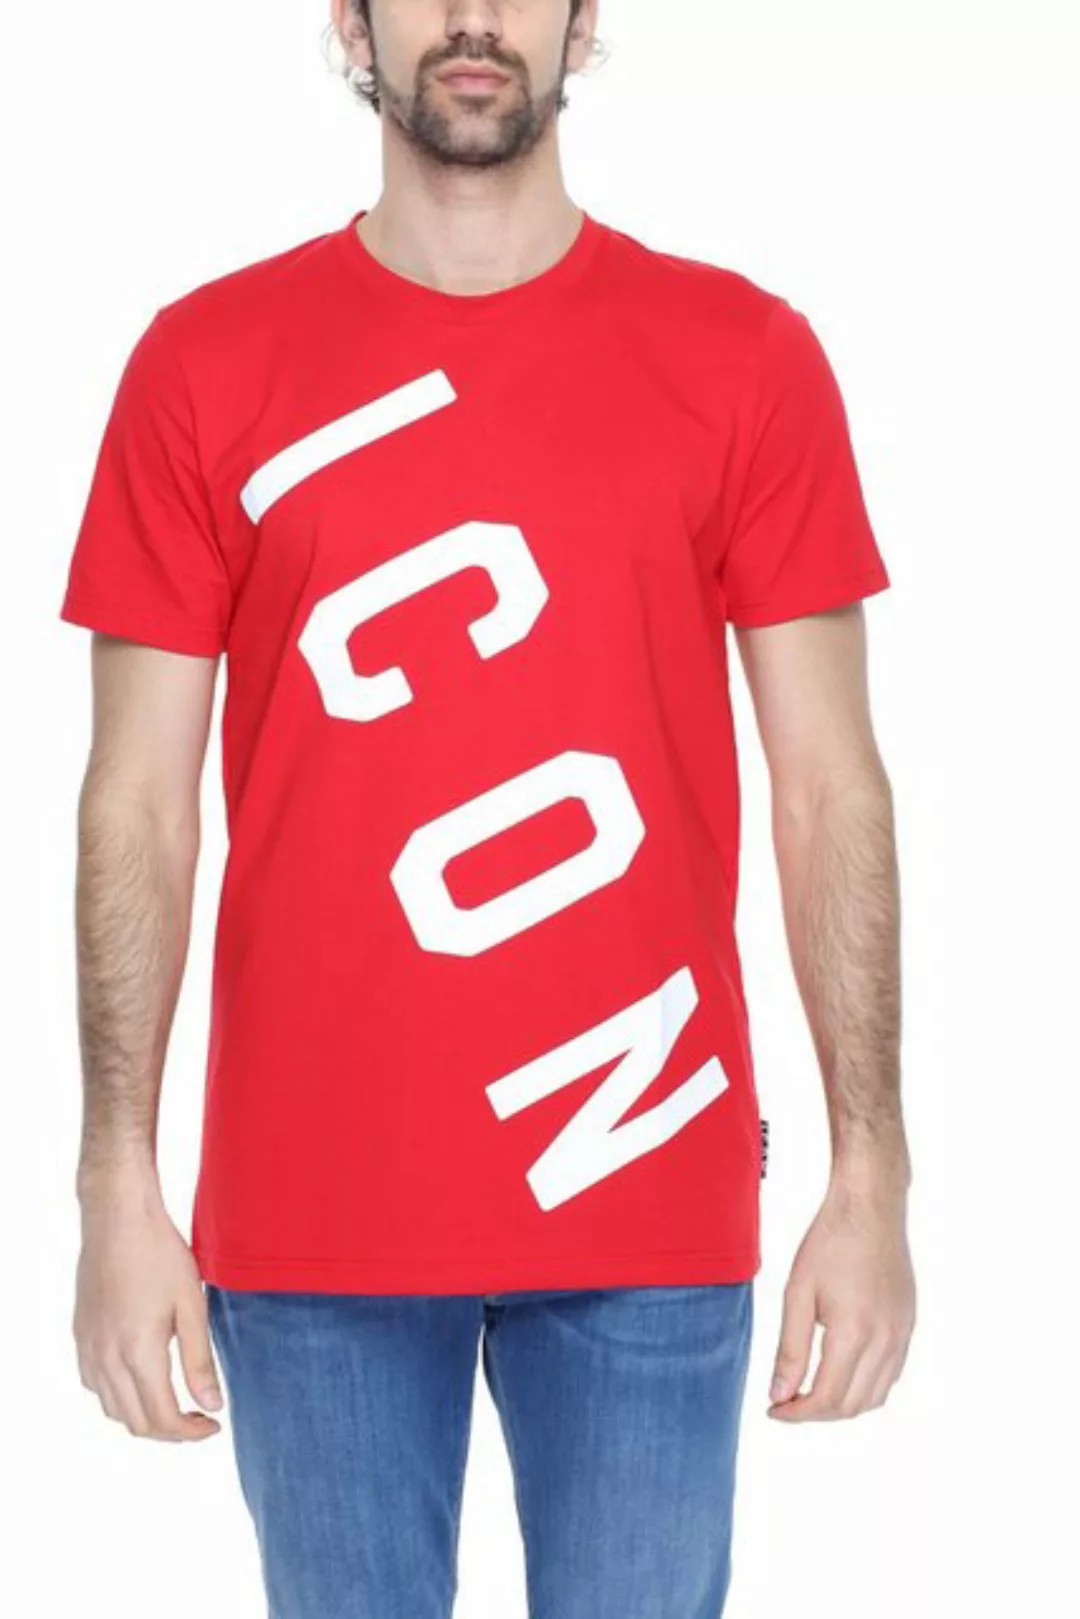 icon T-Shirt günstig online kaufen